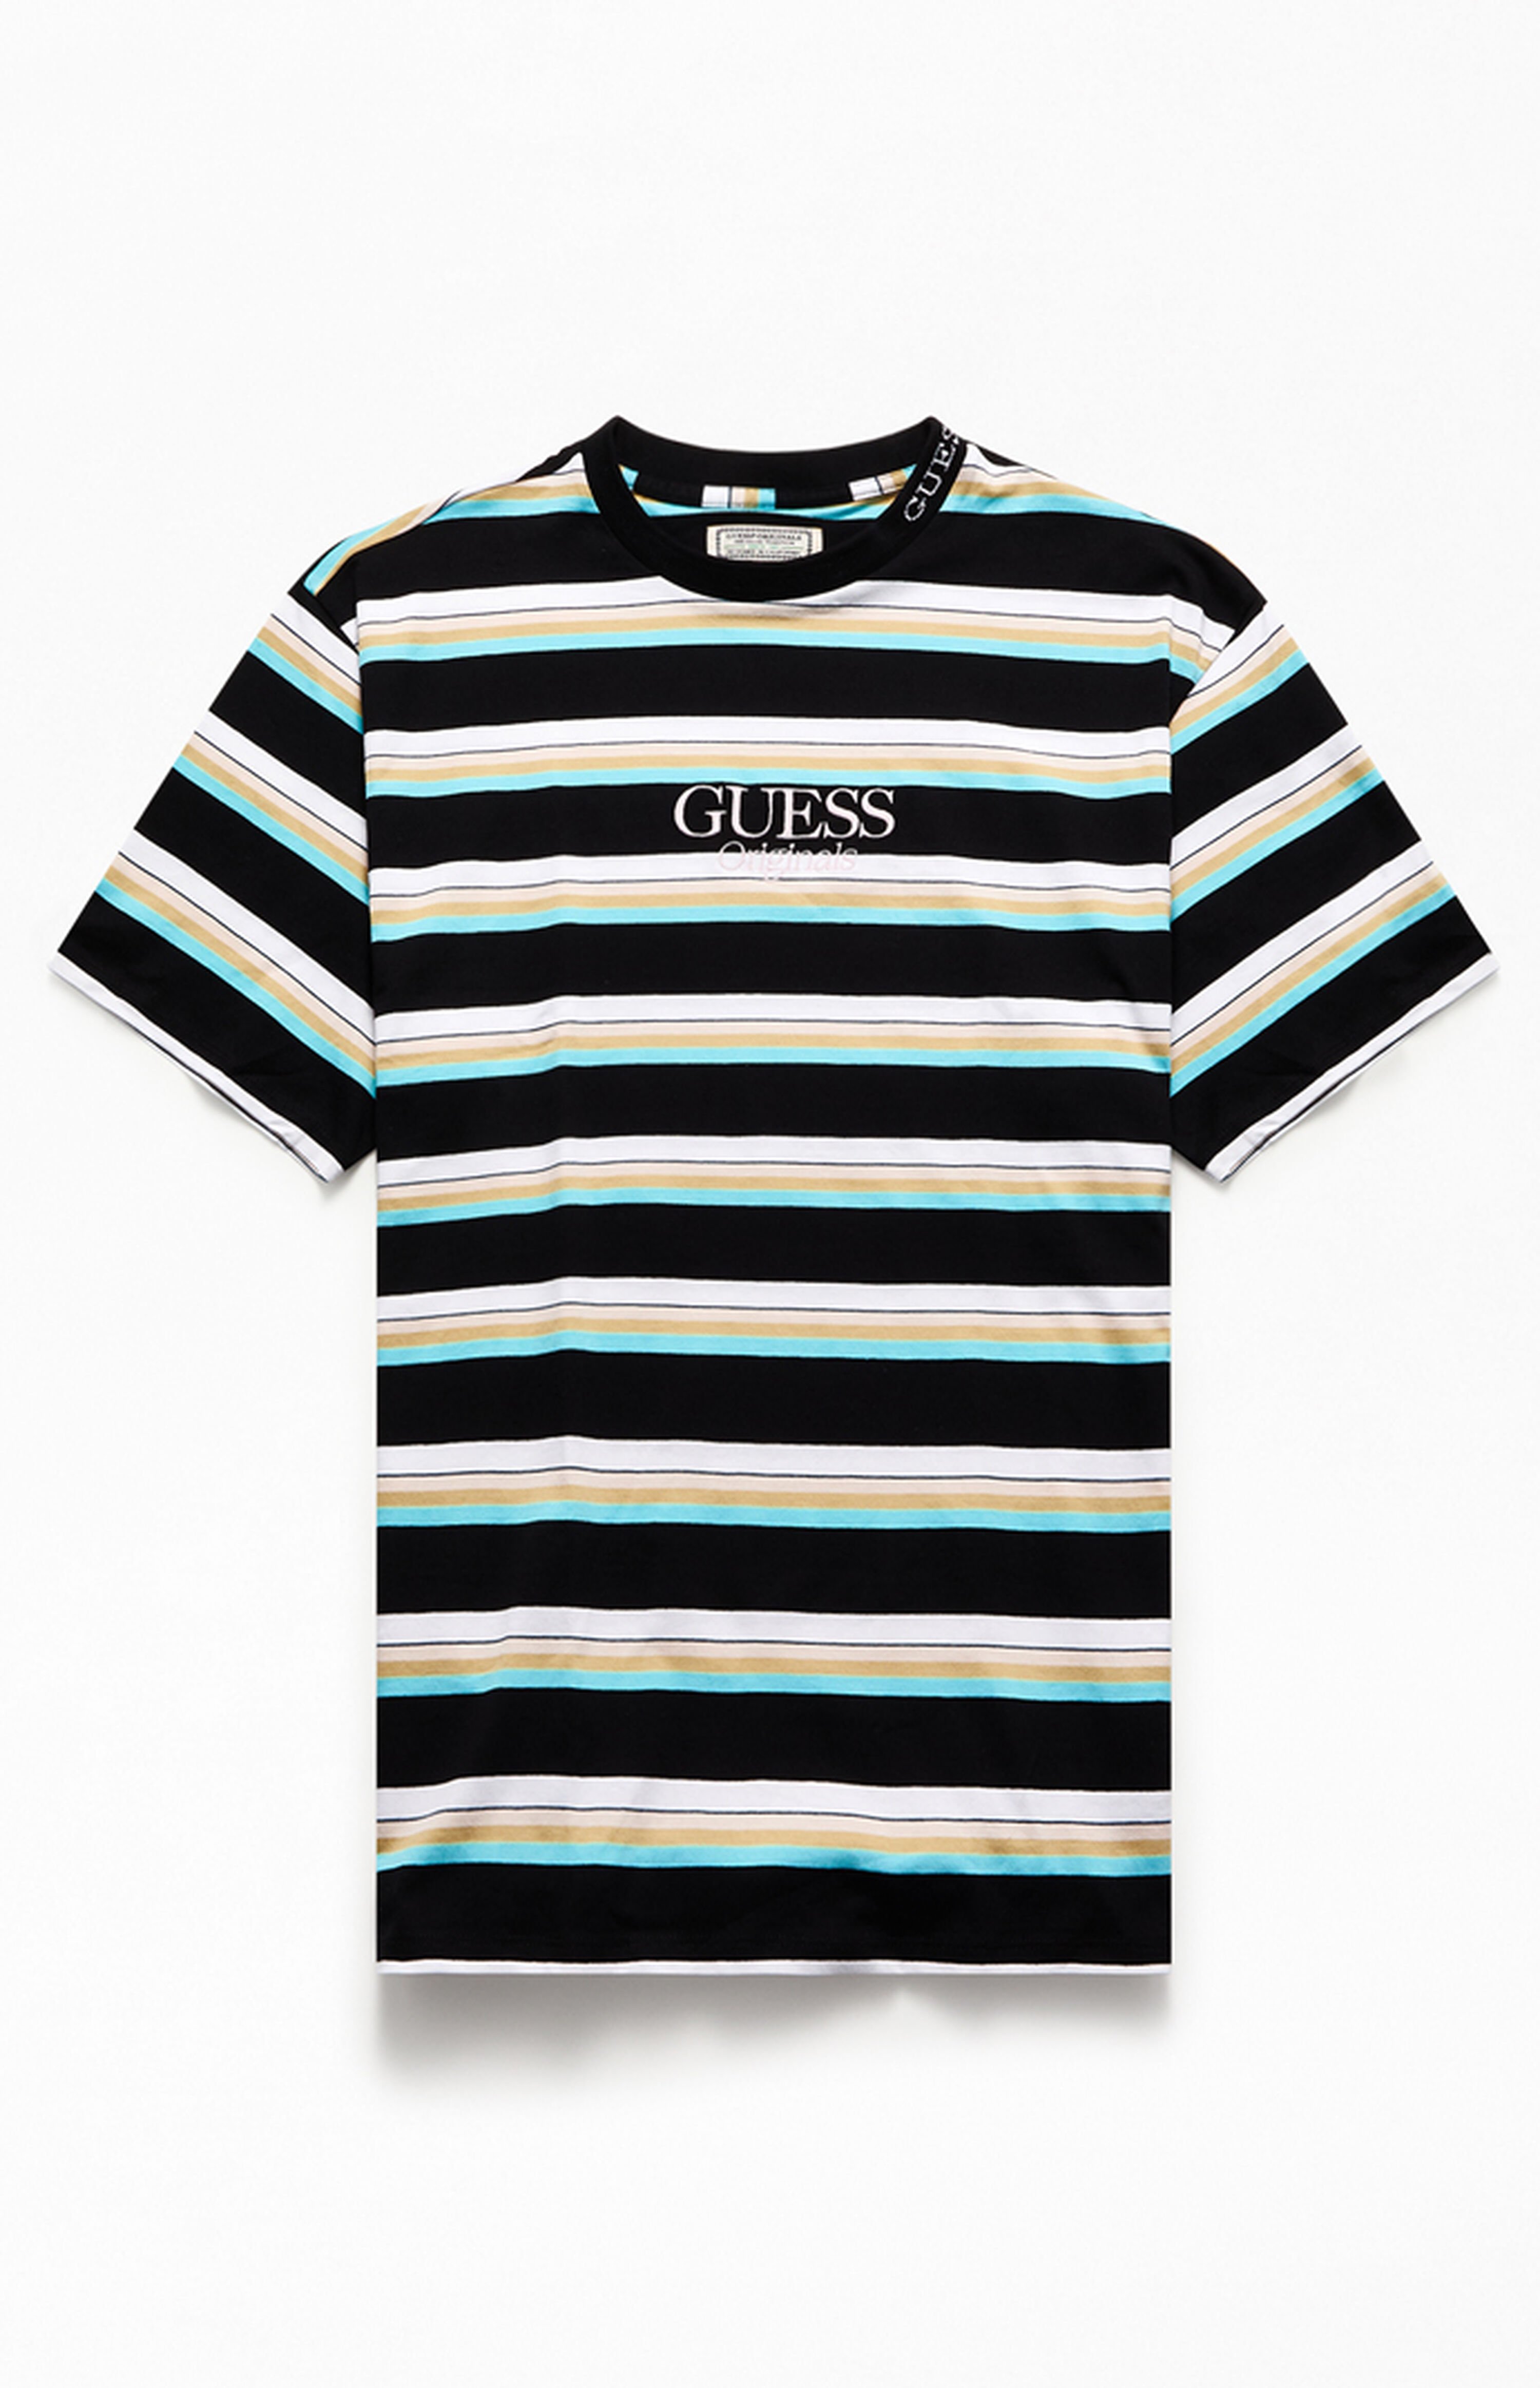 GUESS Originals Dylan Stripe 1981 T-Shirt | PacSun